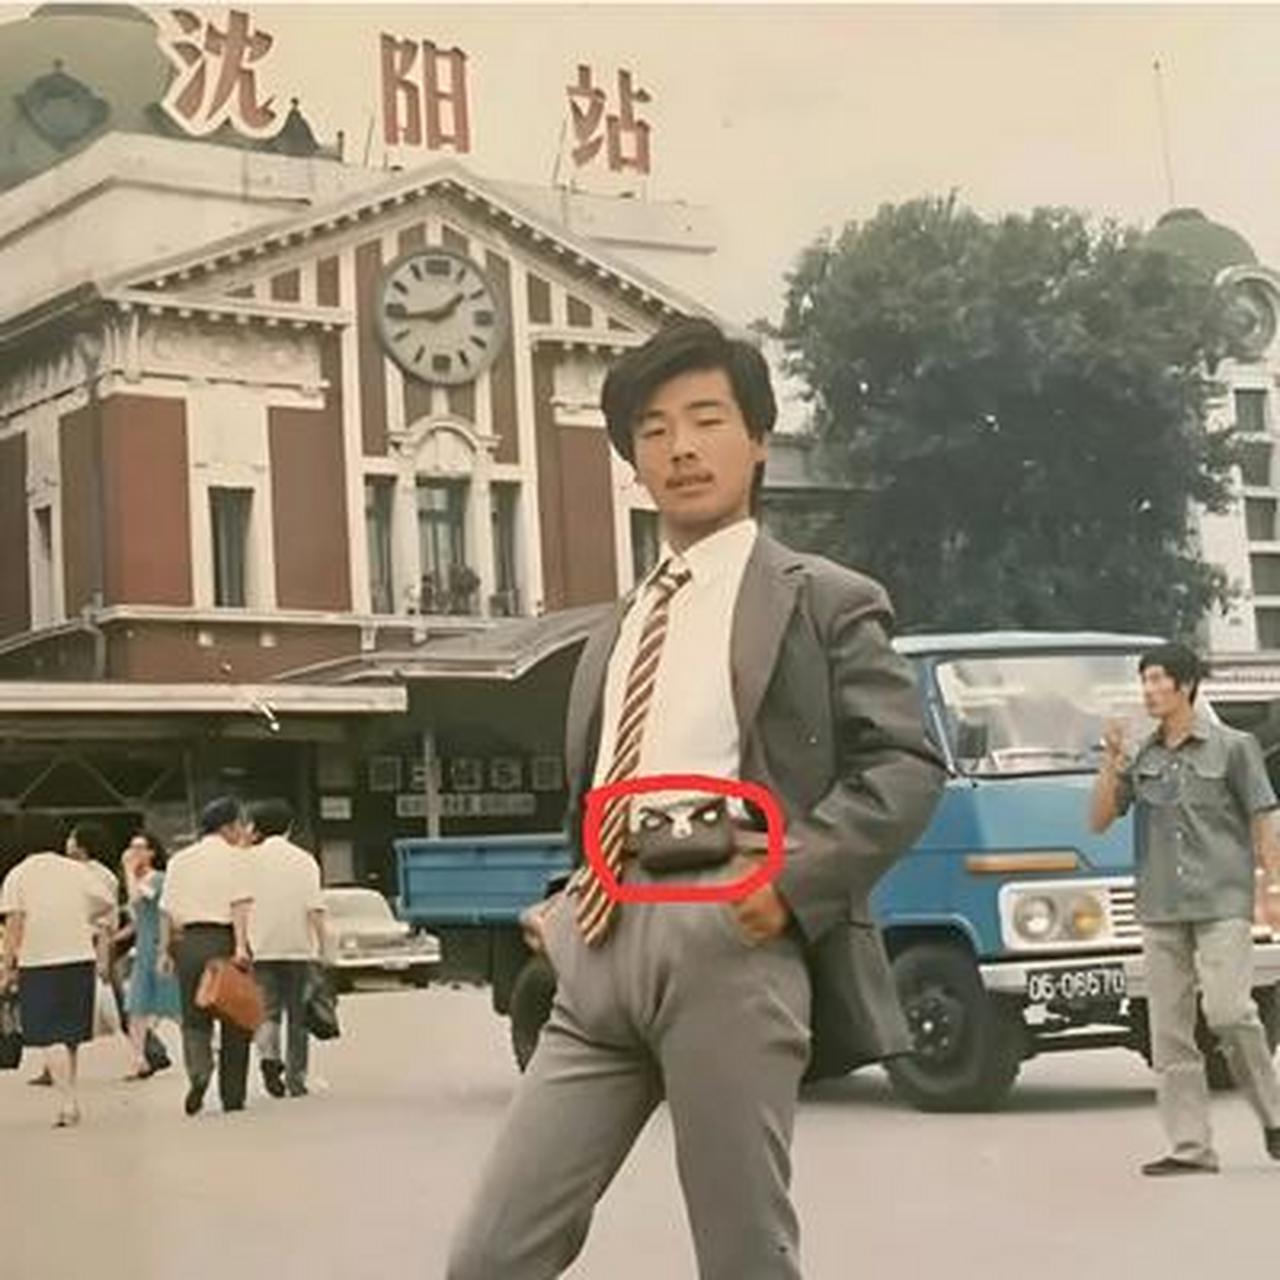 80年代的沈阳车站,一位打扮时髦的小伙子,在车站前的广场上留下的珍贵